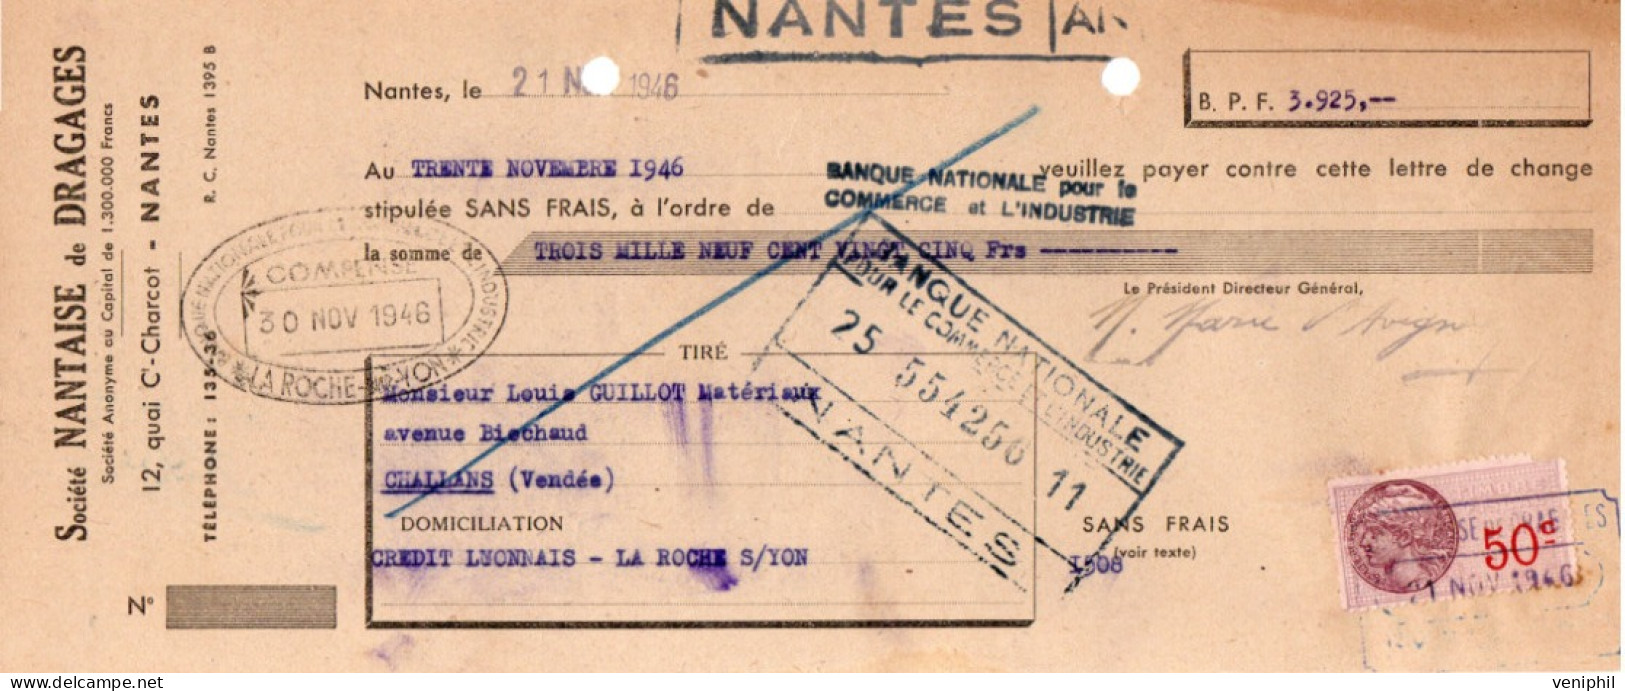 LETTRE  DE CHANGETIMBREE- SOCIETE NANTAISE DE DRAGAGES -NANTES - ANNEE 1946 - Bills Of Exchange